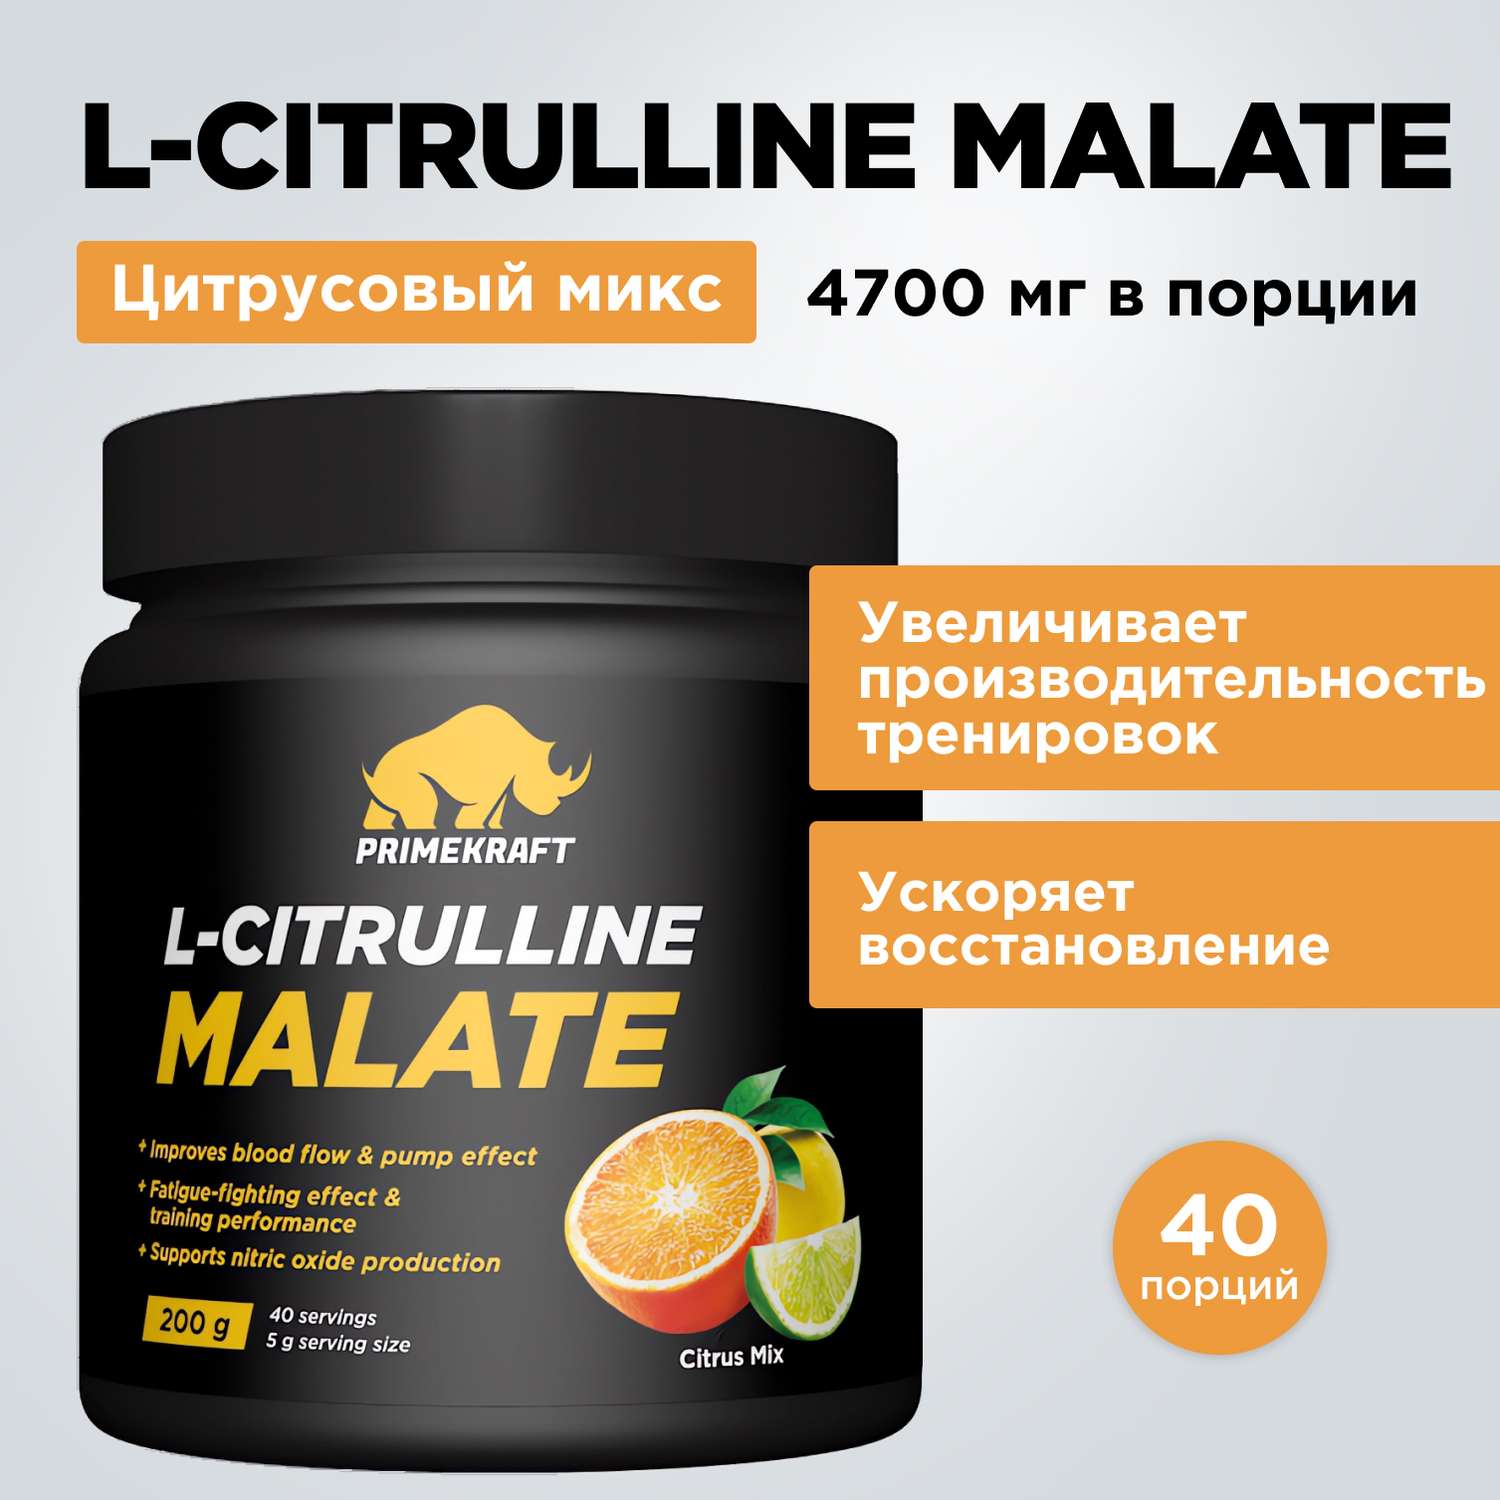 Цитруллин малат Prime Kraft L-Citrulline Malate цитрусовый микс 200 г - фото 1